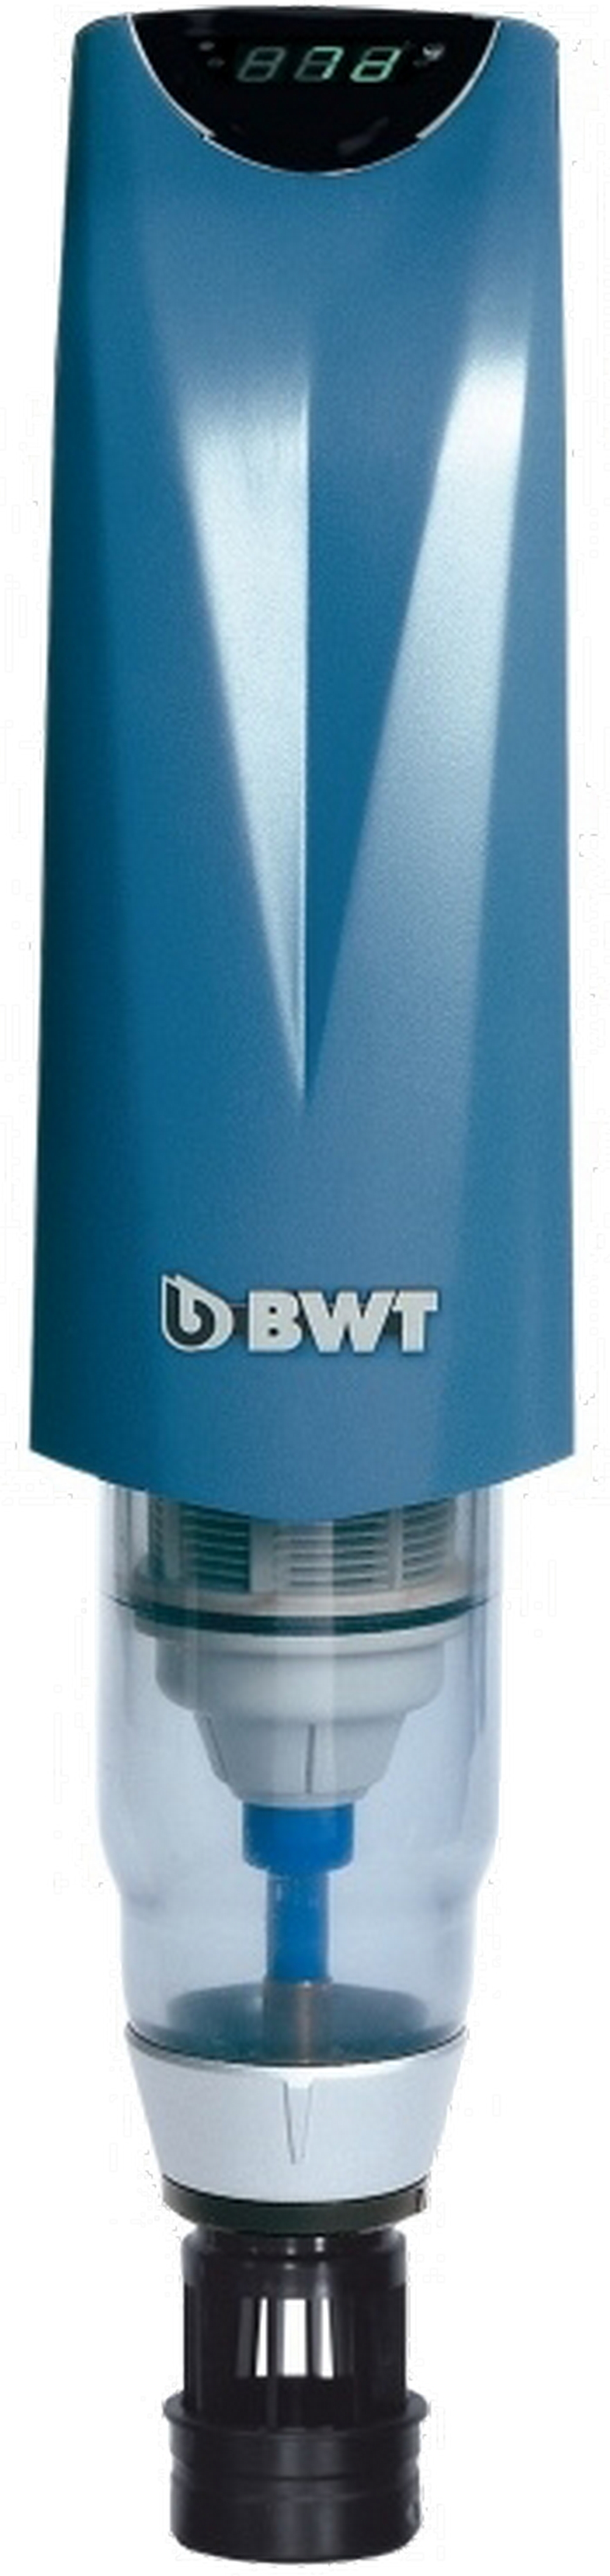 Фильтр для очистки воды от ржавчины и песка BWT Infinity A 3/4"-1 1/4"